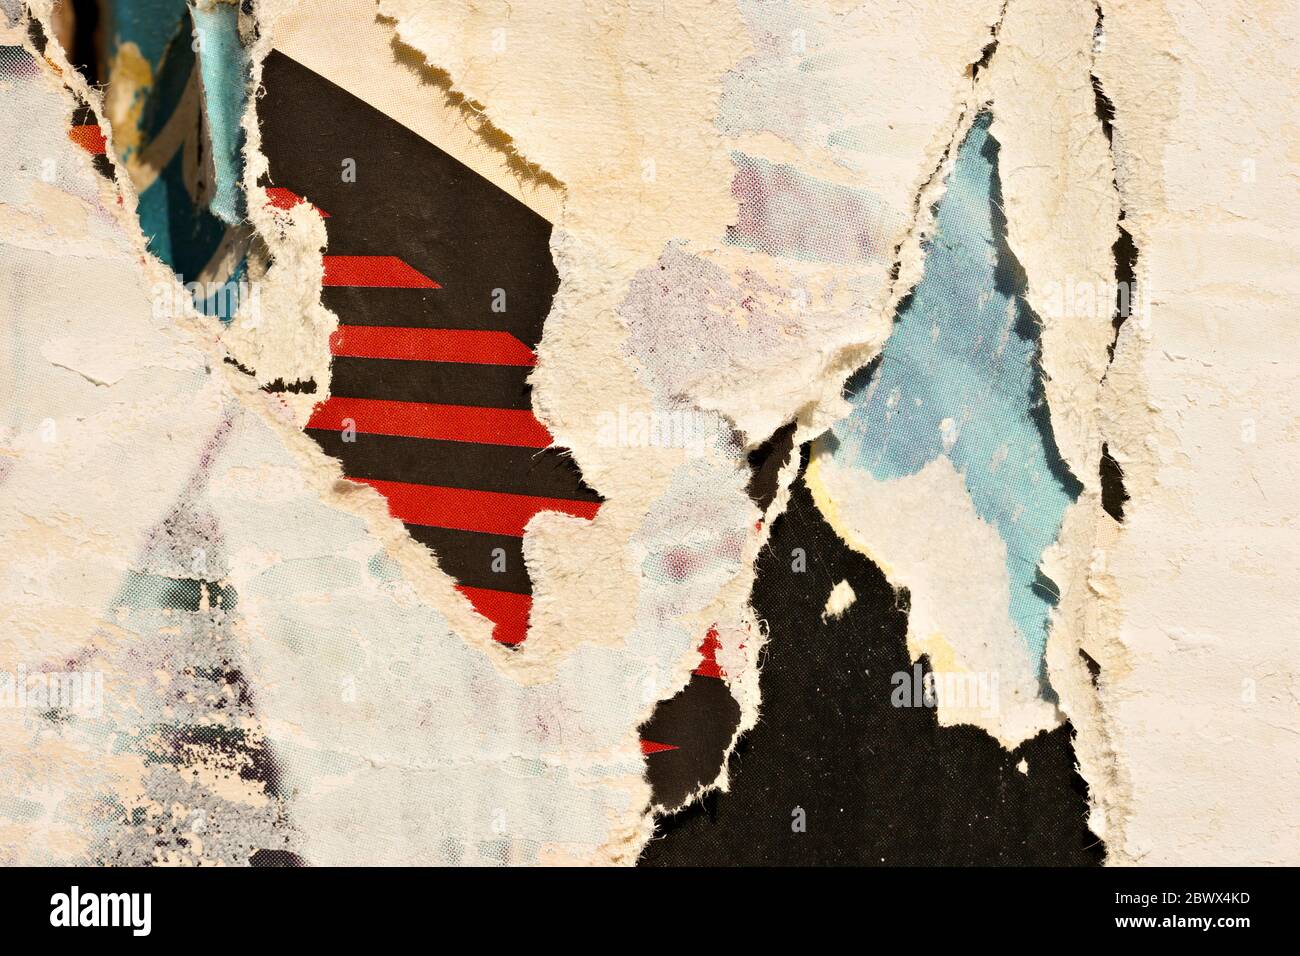 Alte zerrissene Poster Grunge Textur Hintergrund zerknittert Papier Hintergrund Plakat Oberfläche / Urban Street Poster Stockfoto